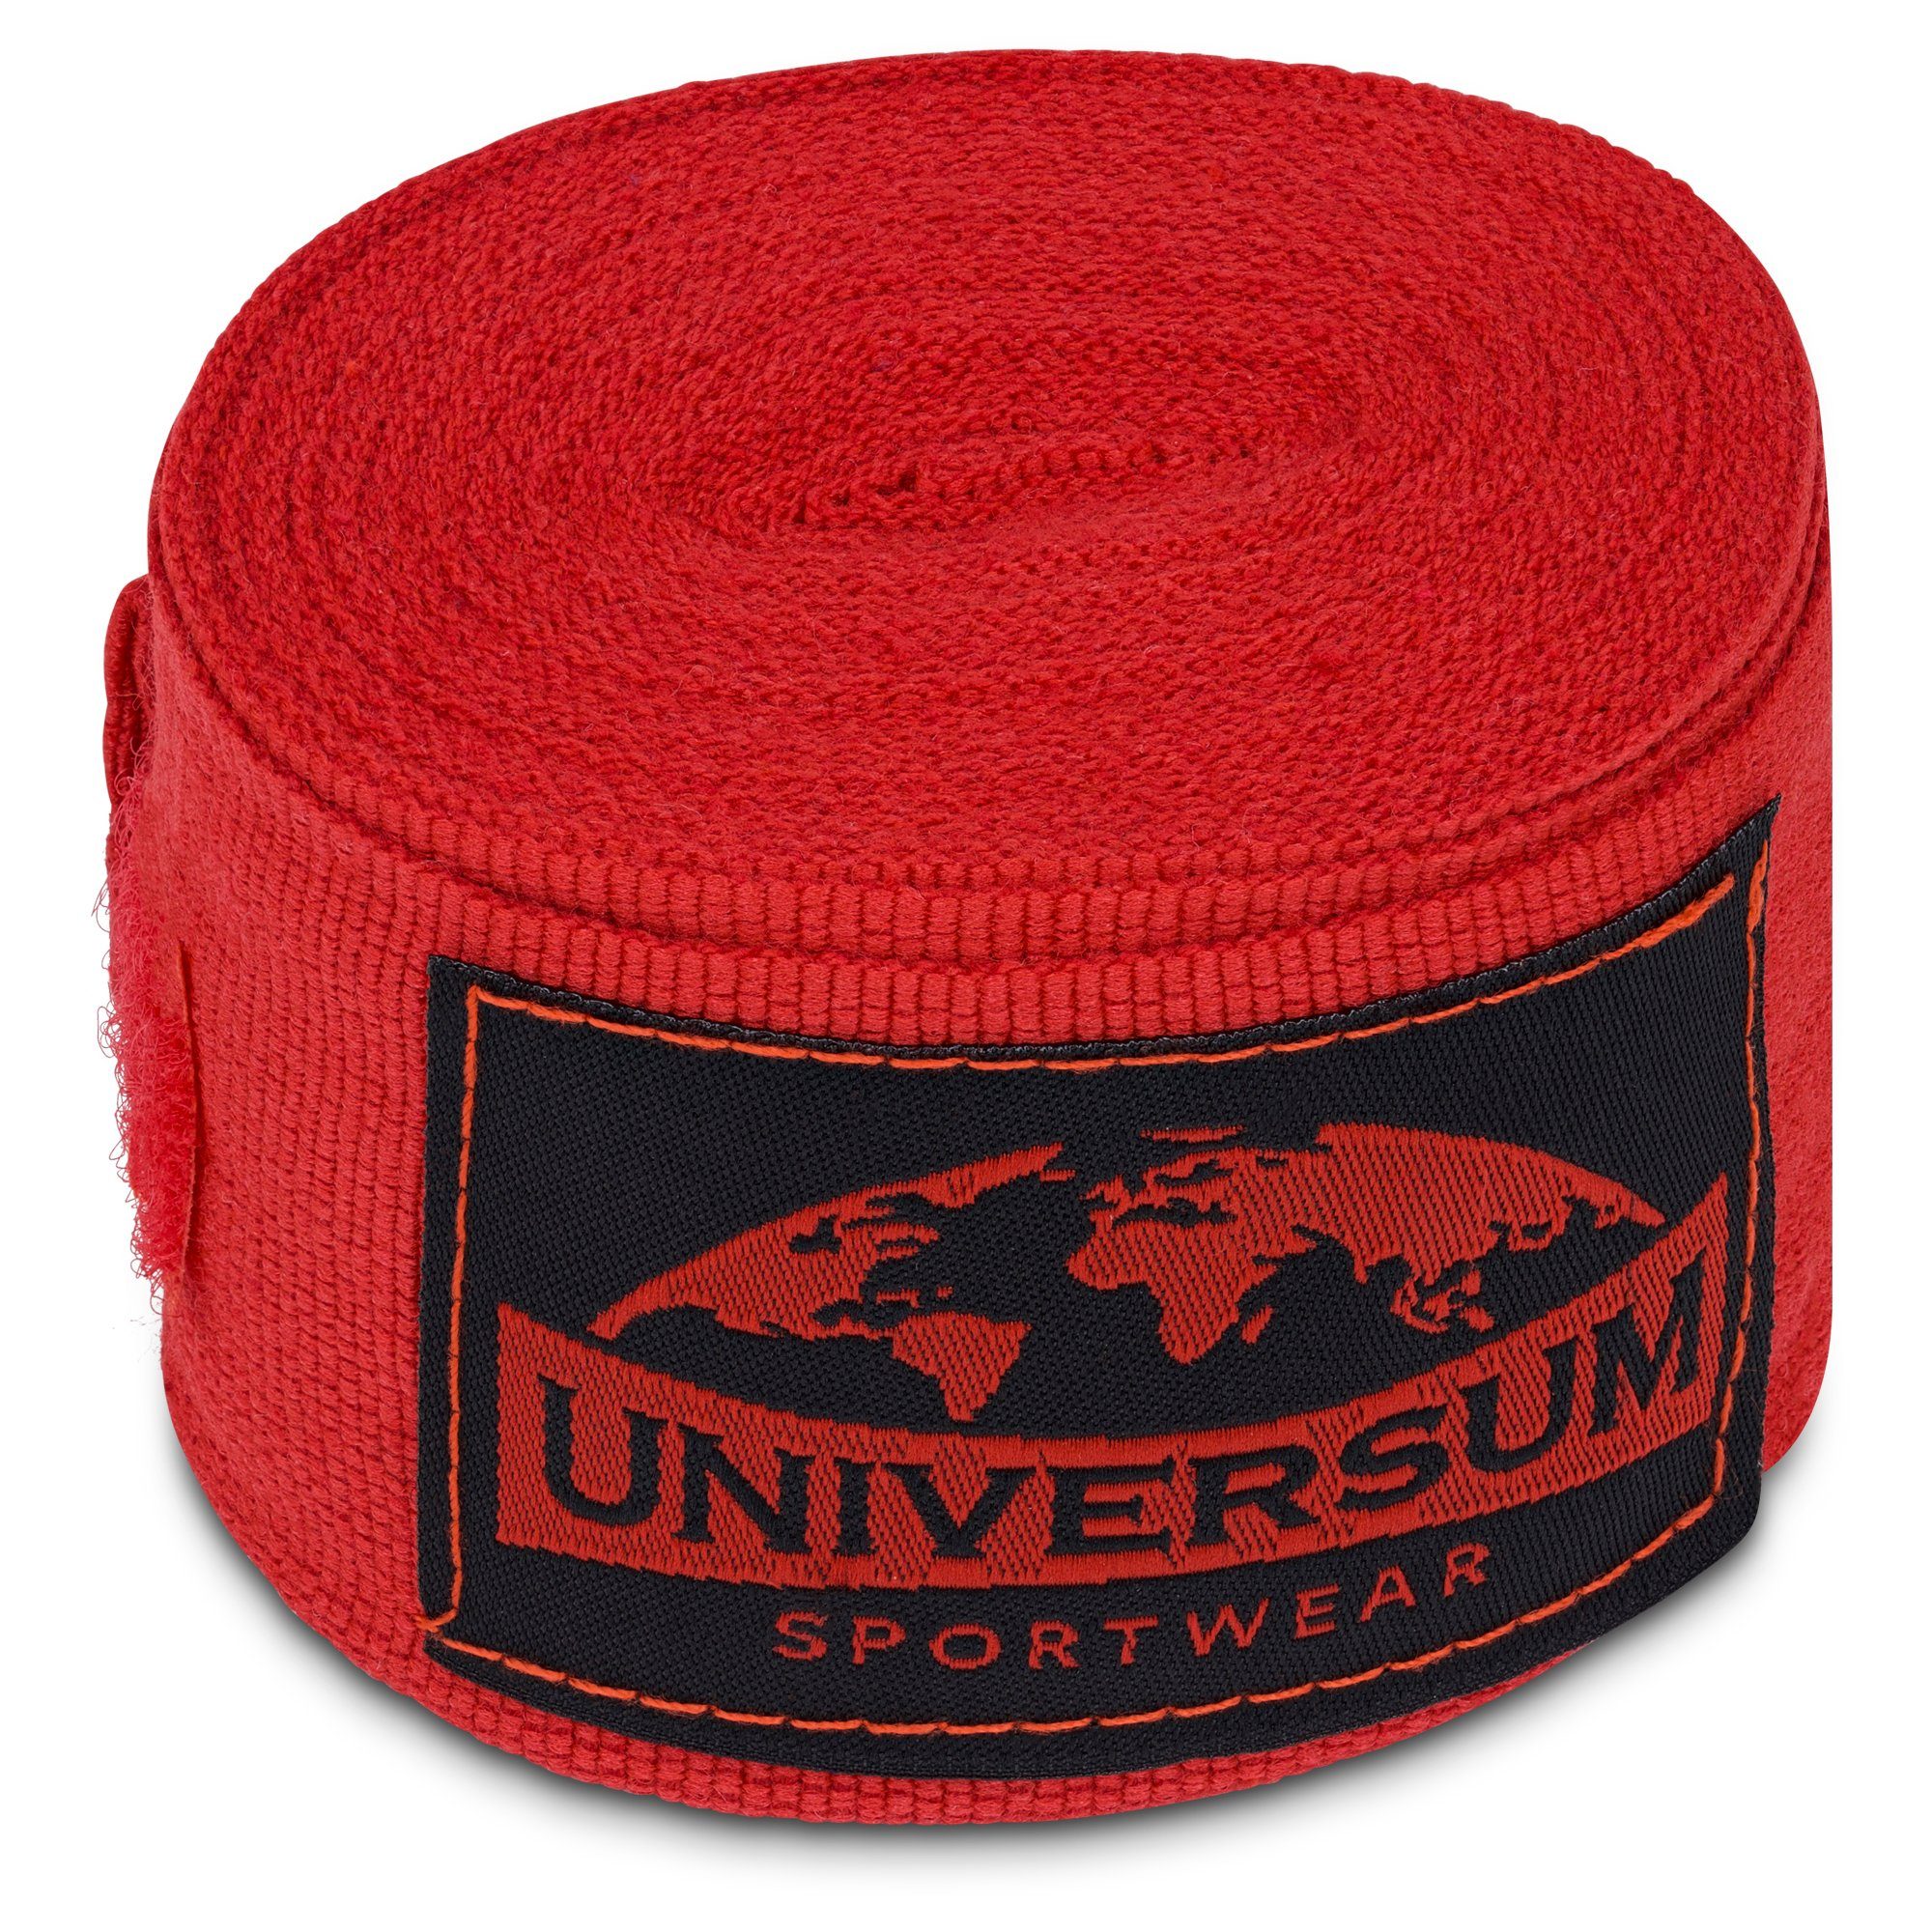 Bandage, Handgelenk Boxbandagen Klettverschluss Sportwear Universum mit langen Rot-Schwarz